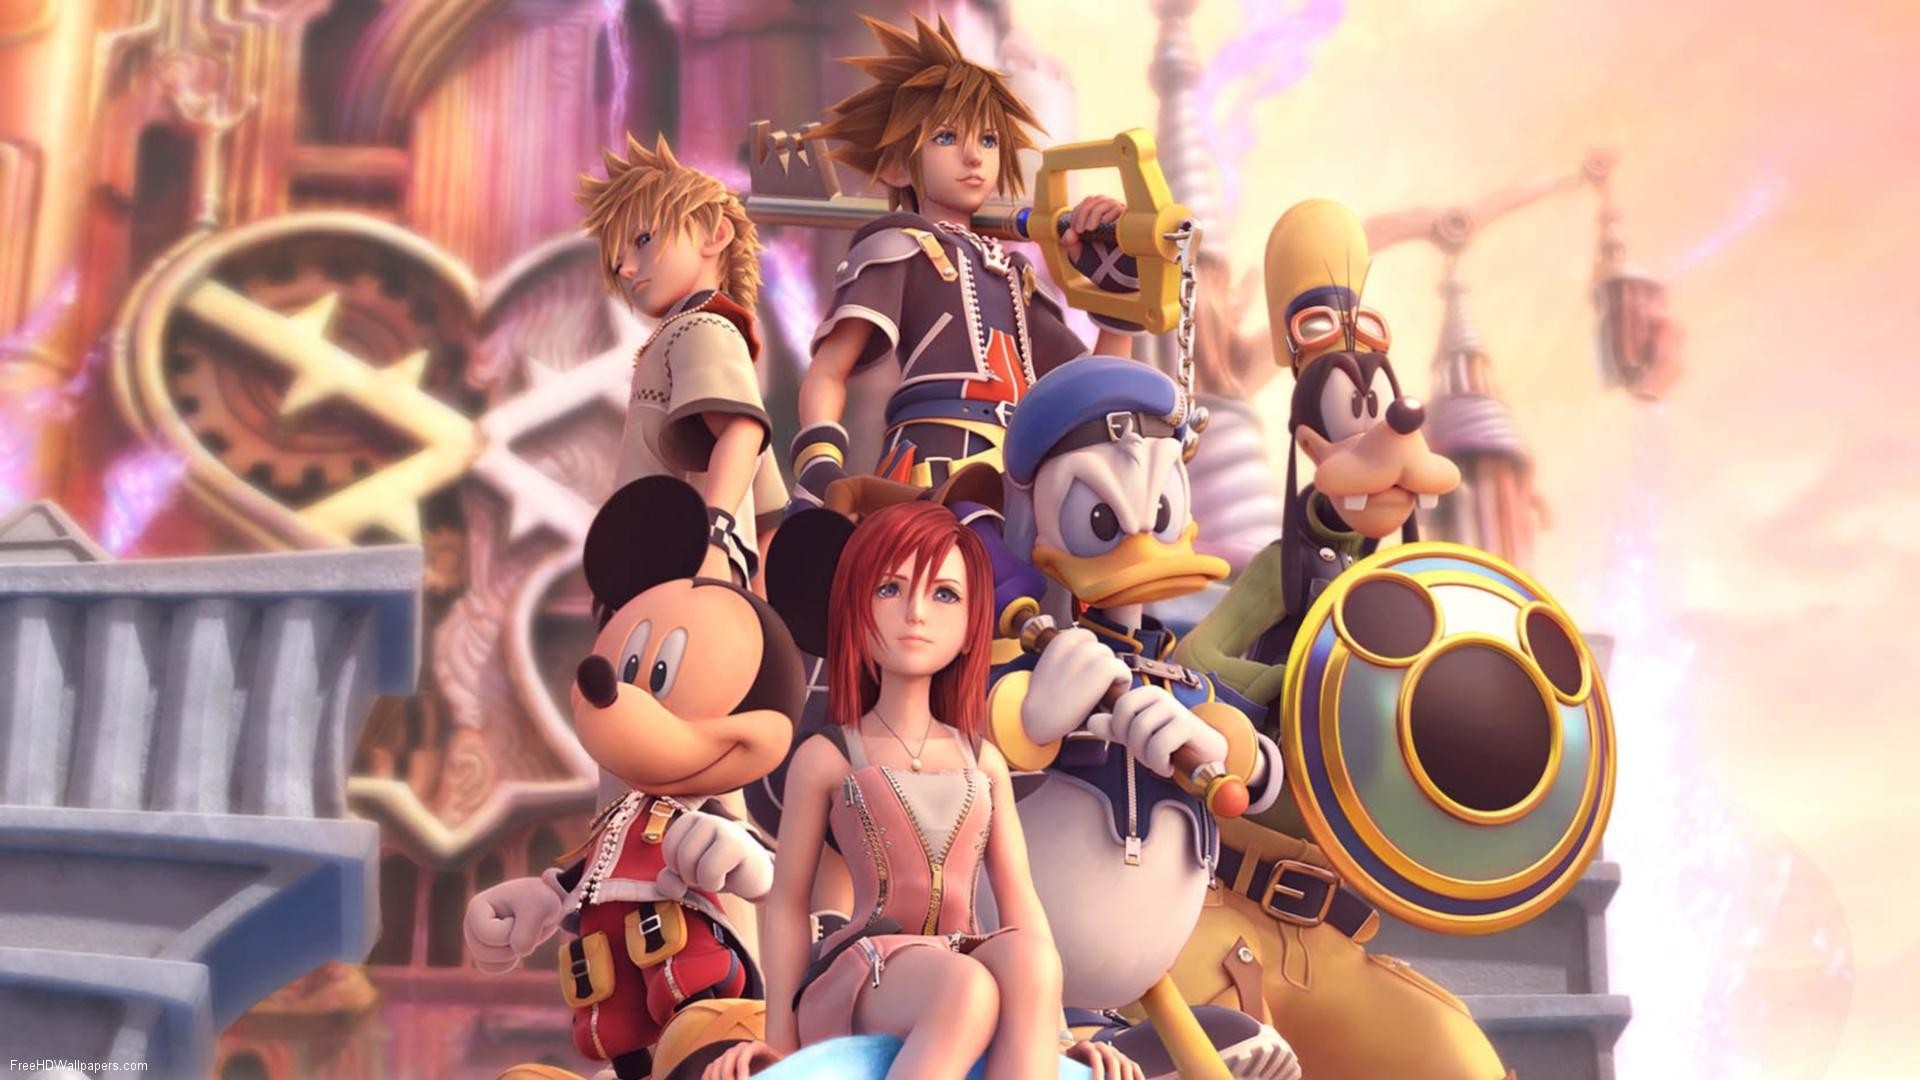 Sora Kingdom Hearts Donald Goofy Keys Video Games Kingdom Hearts Mickey Mouse Roxas Kairi Donald Duc 1920x1080